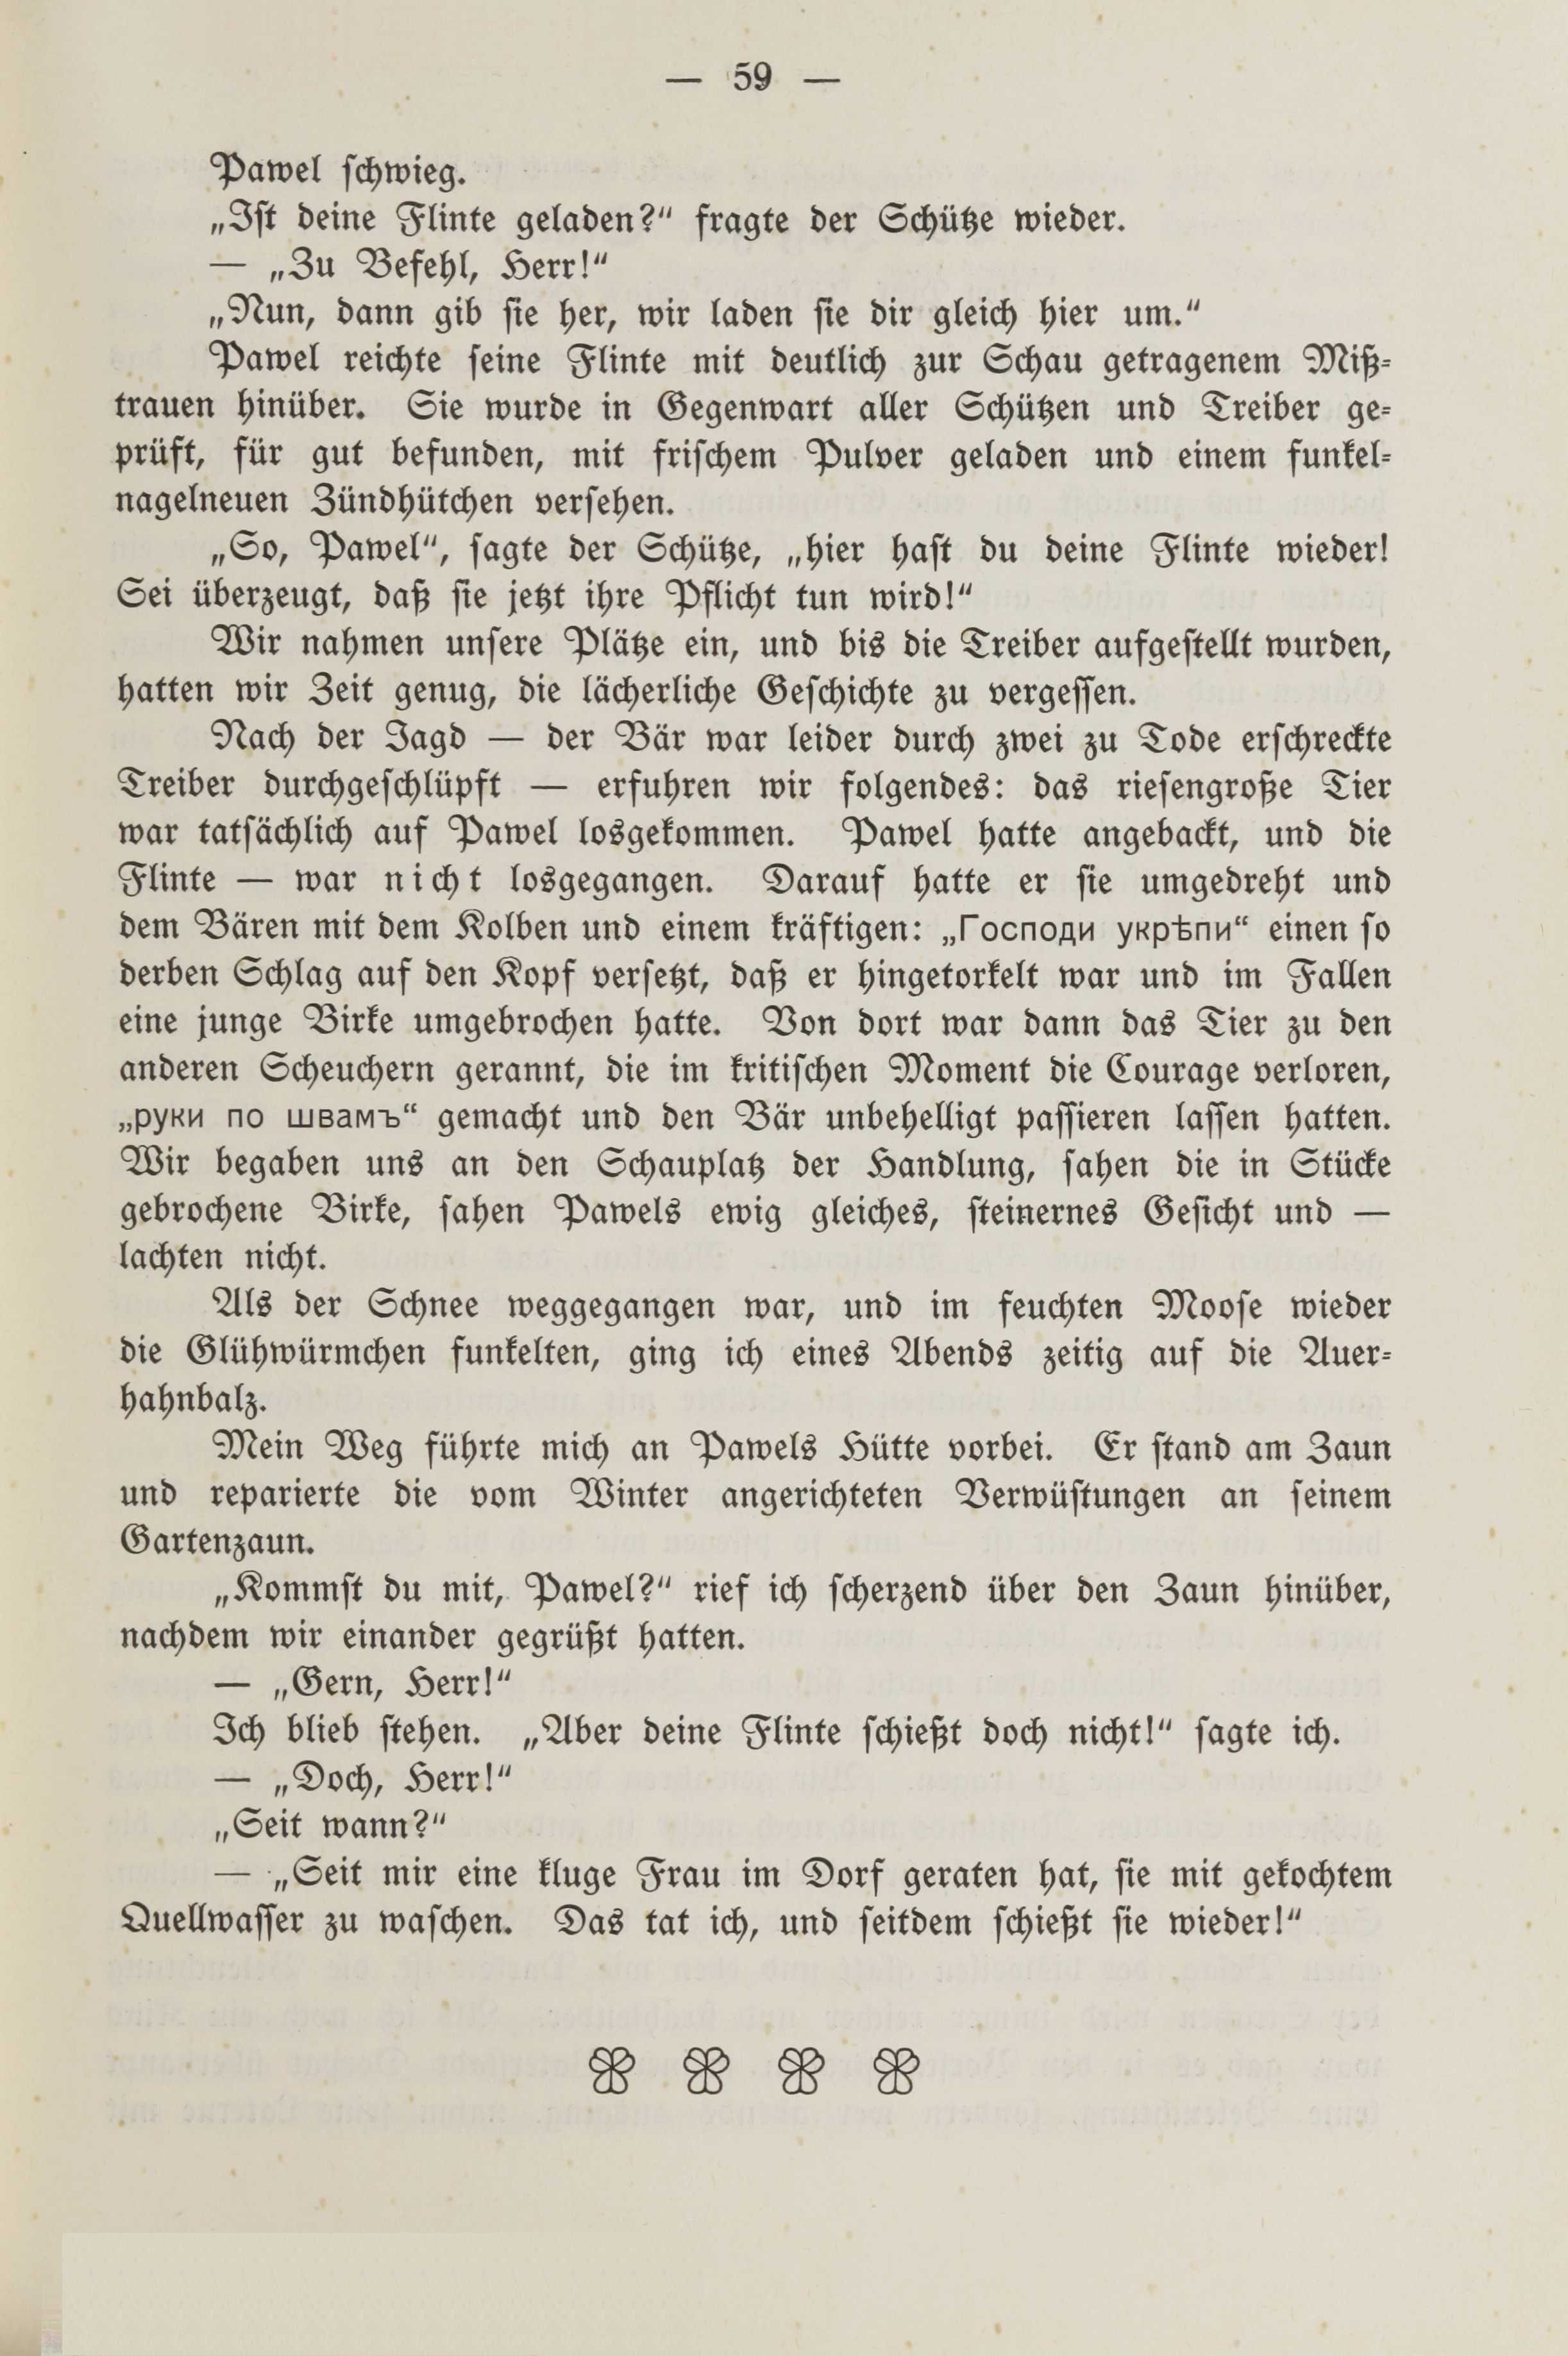 Deutsche Monatsschrift für Russland [2] (1913) | 63. (59) Haupttext